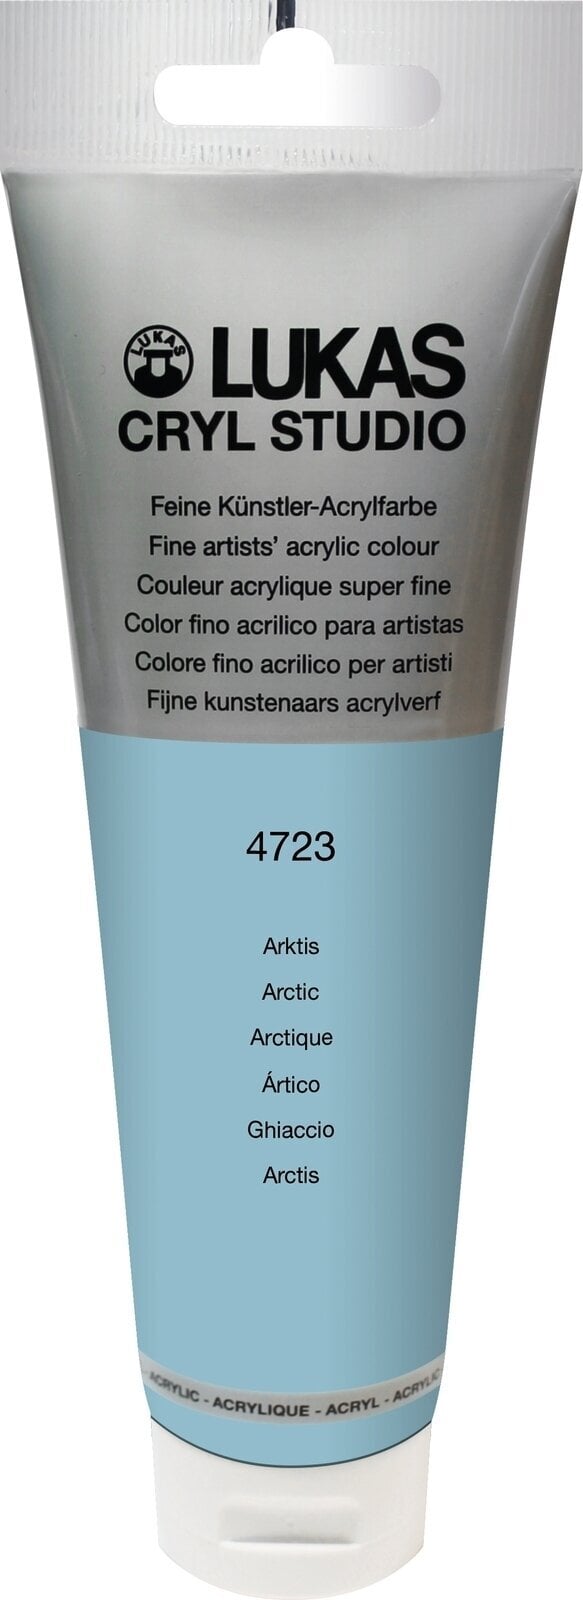 Acrylfarbe Lukas Cryl Studio Acrylic Paint Plastic Tube Acrylfarbe Arctic 125 ml 1 Stck